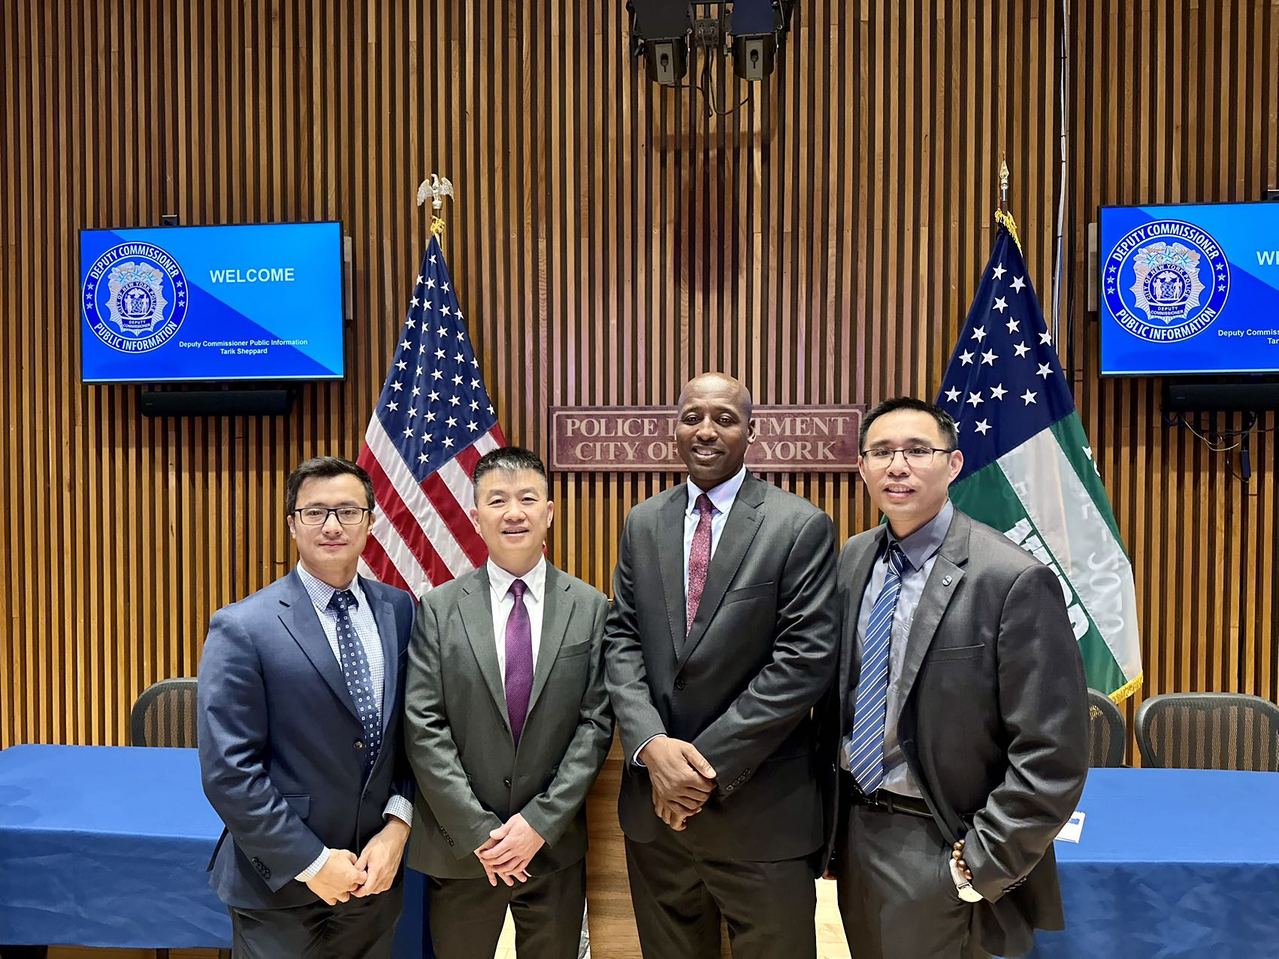 紐約市警加強少數族裔溝通3華裔入列| 社區新聞| 紐約| 世界新聞網